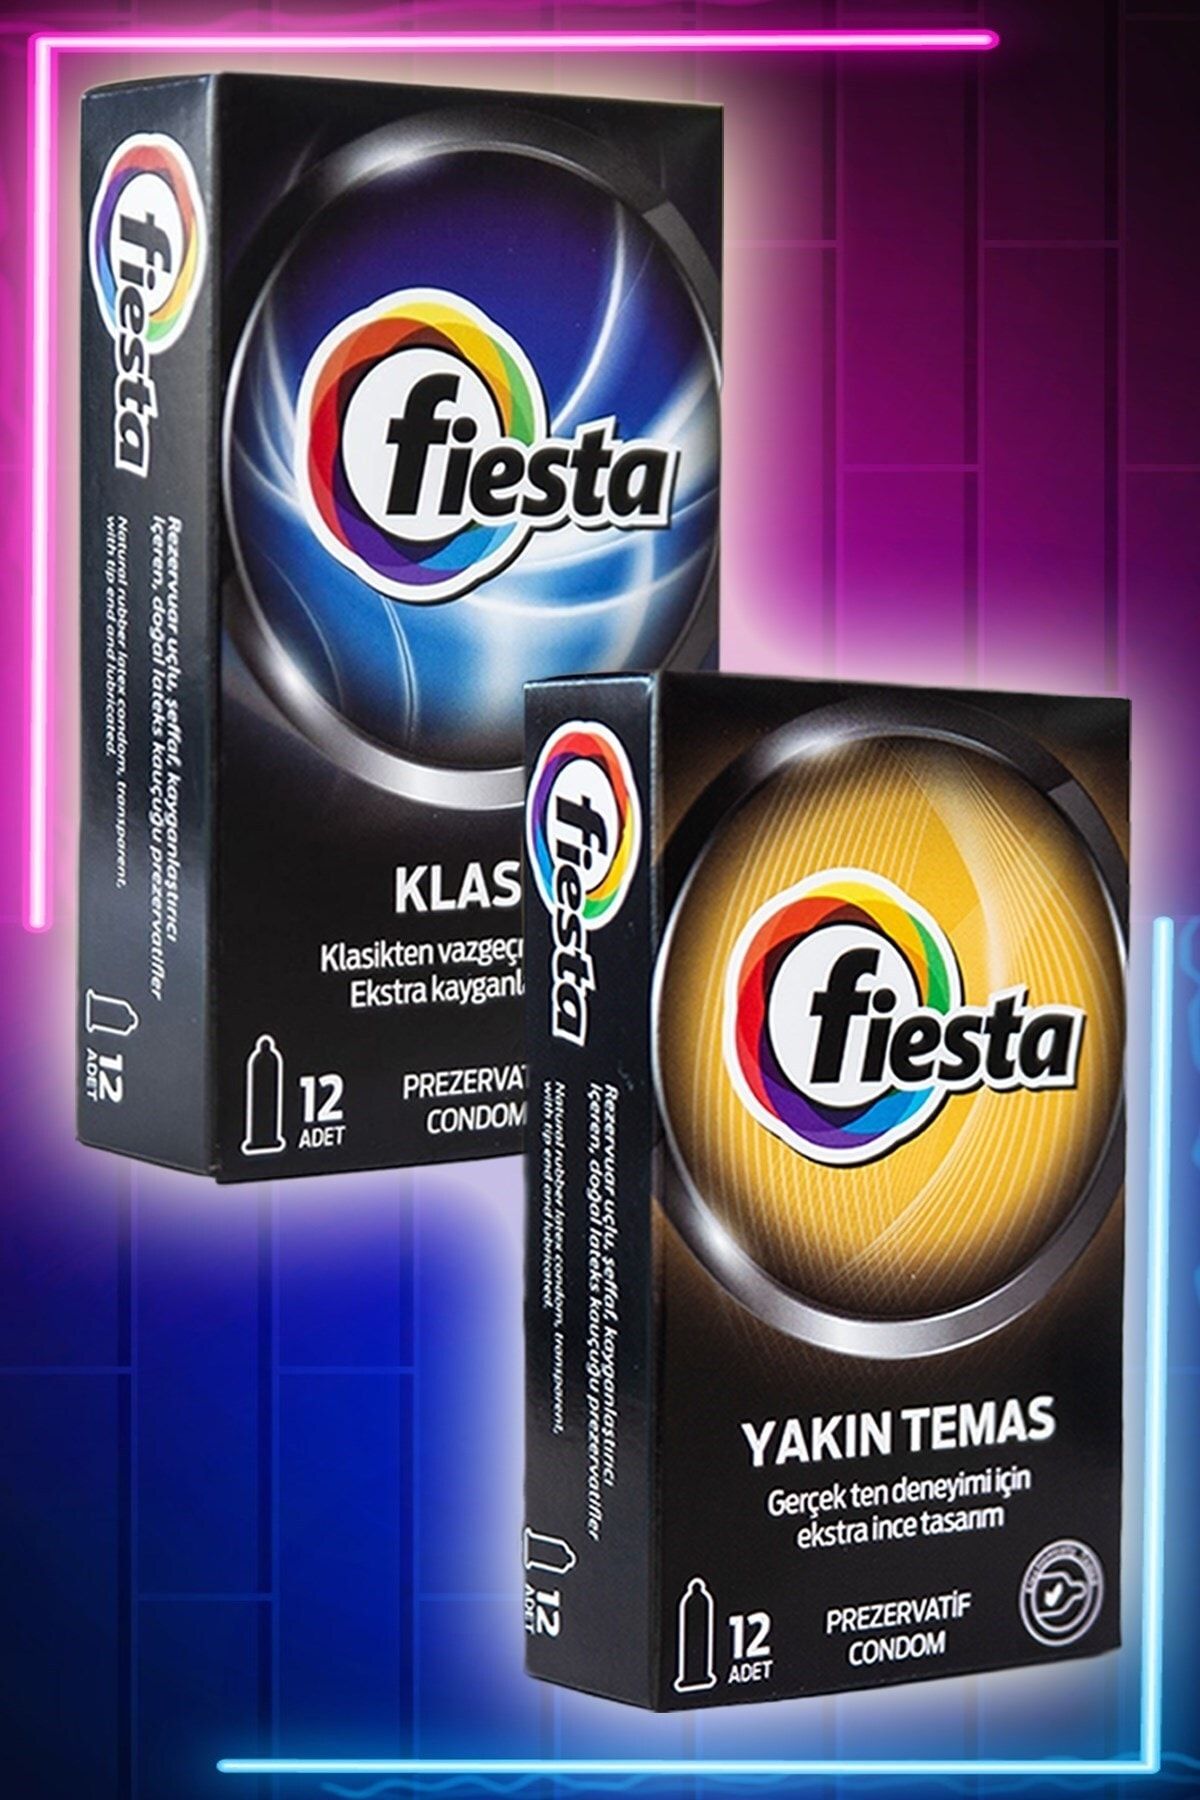 Fiesta Ultra Ince Prezervatif Ve Klasik Sevenler Için 2'li Ekonomik Paket